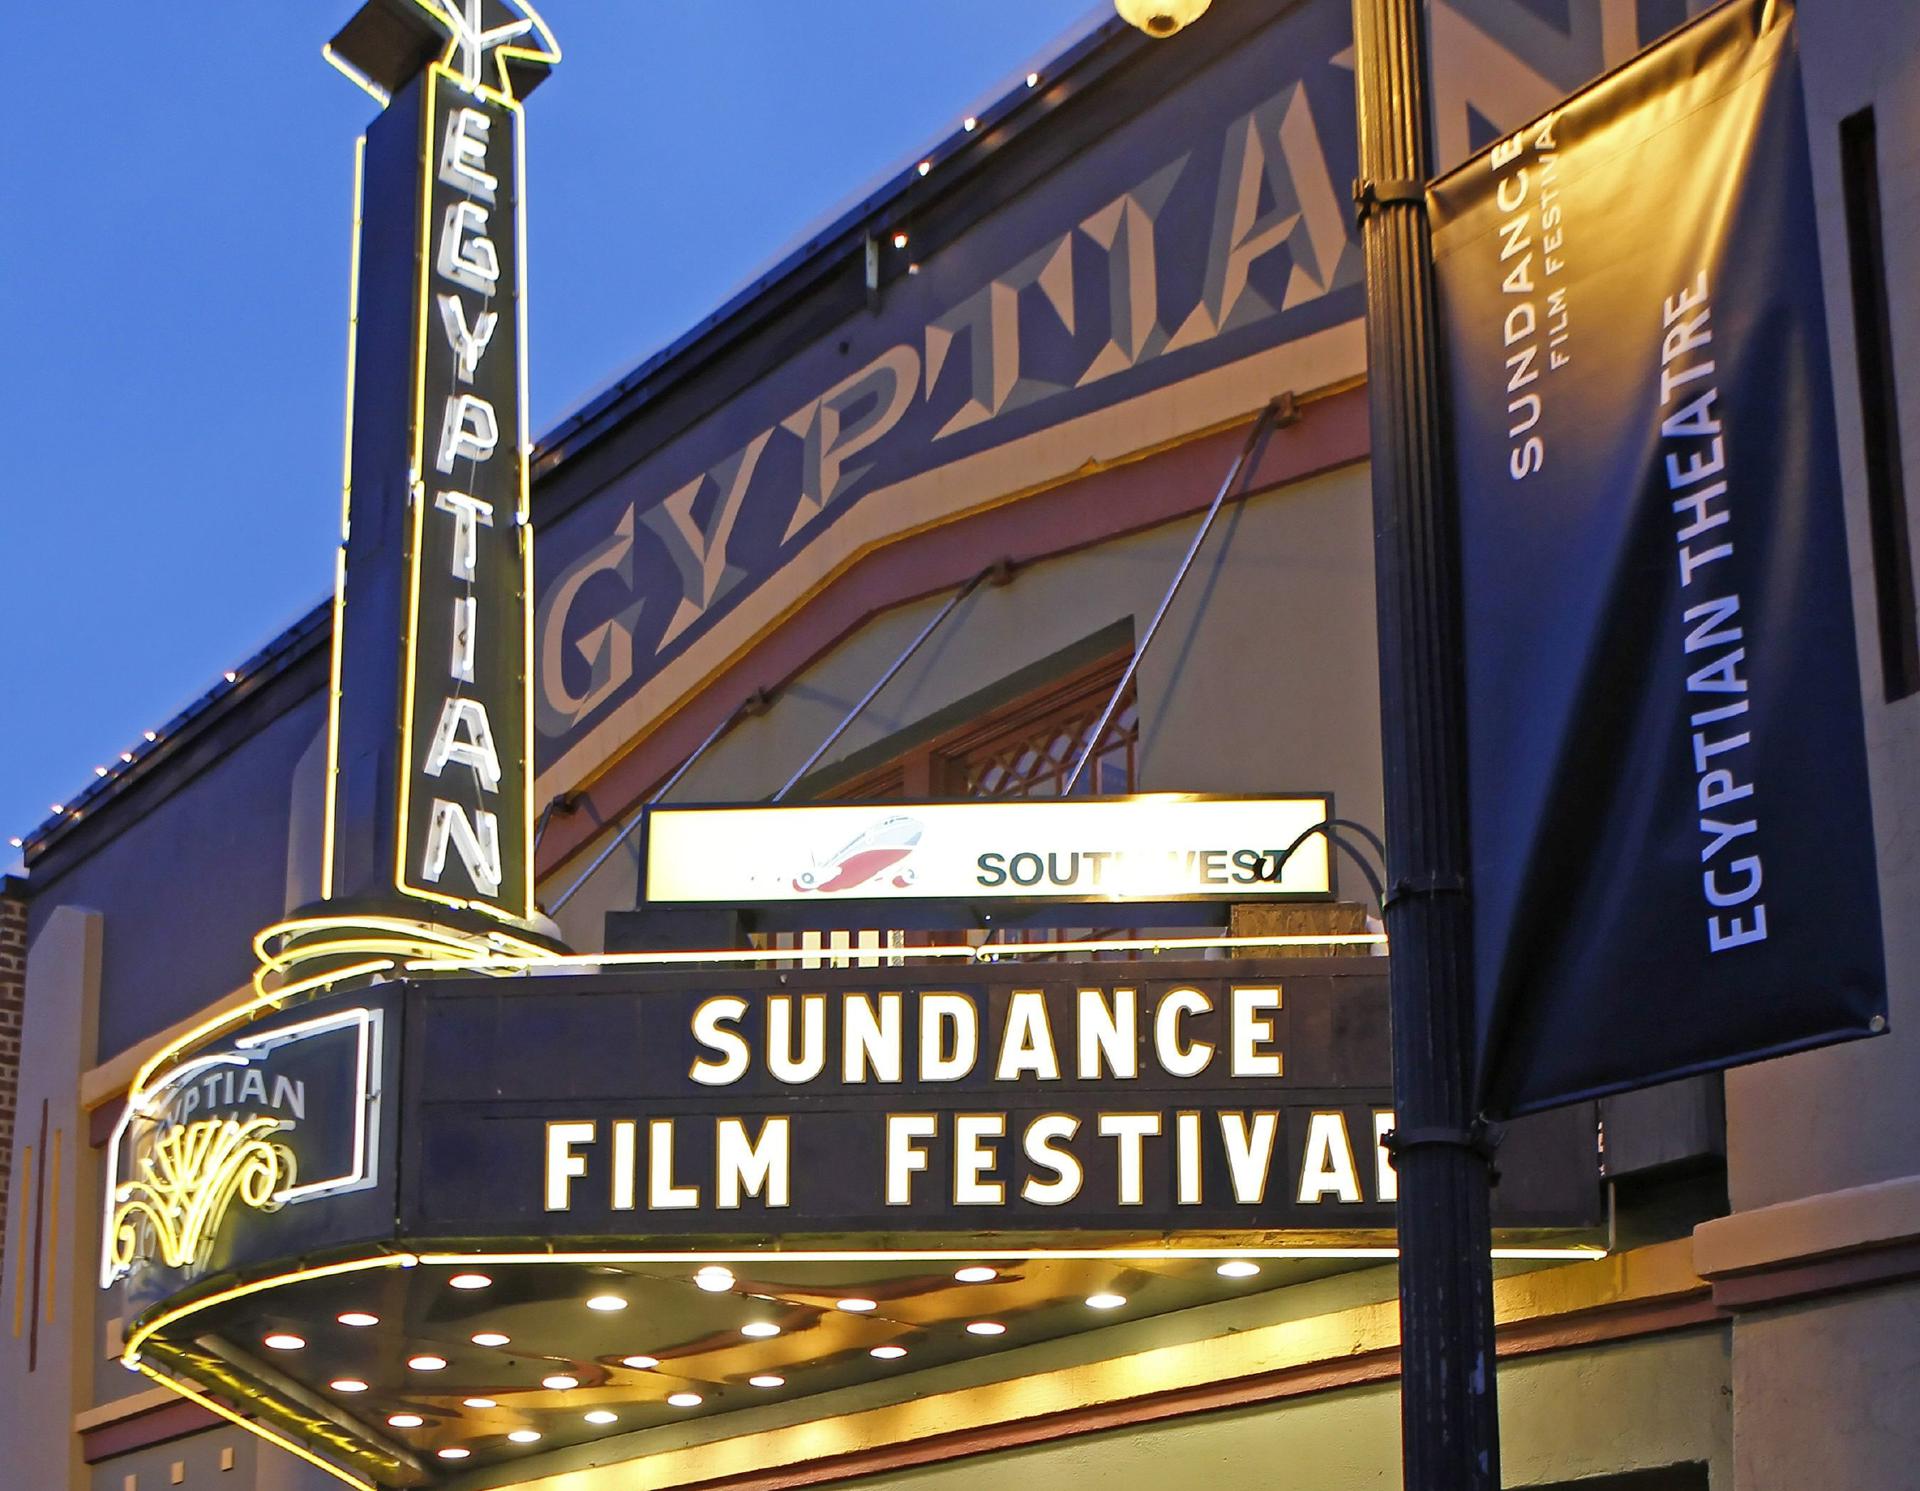 Fotografía de archivo fechada el 25 de enero de 2010 donde se muestra el cartel luminoso del Festival de Cine de Sundance en la fachada del Teatro Egipcio en Park City, Utah (Estados Unidos). EFE/George Frey